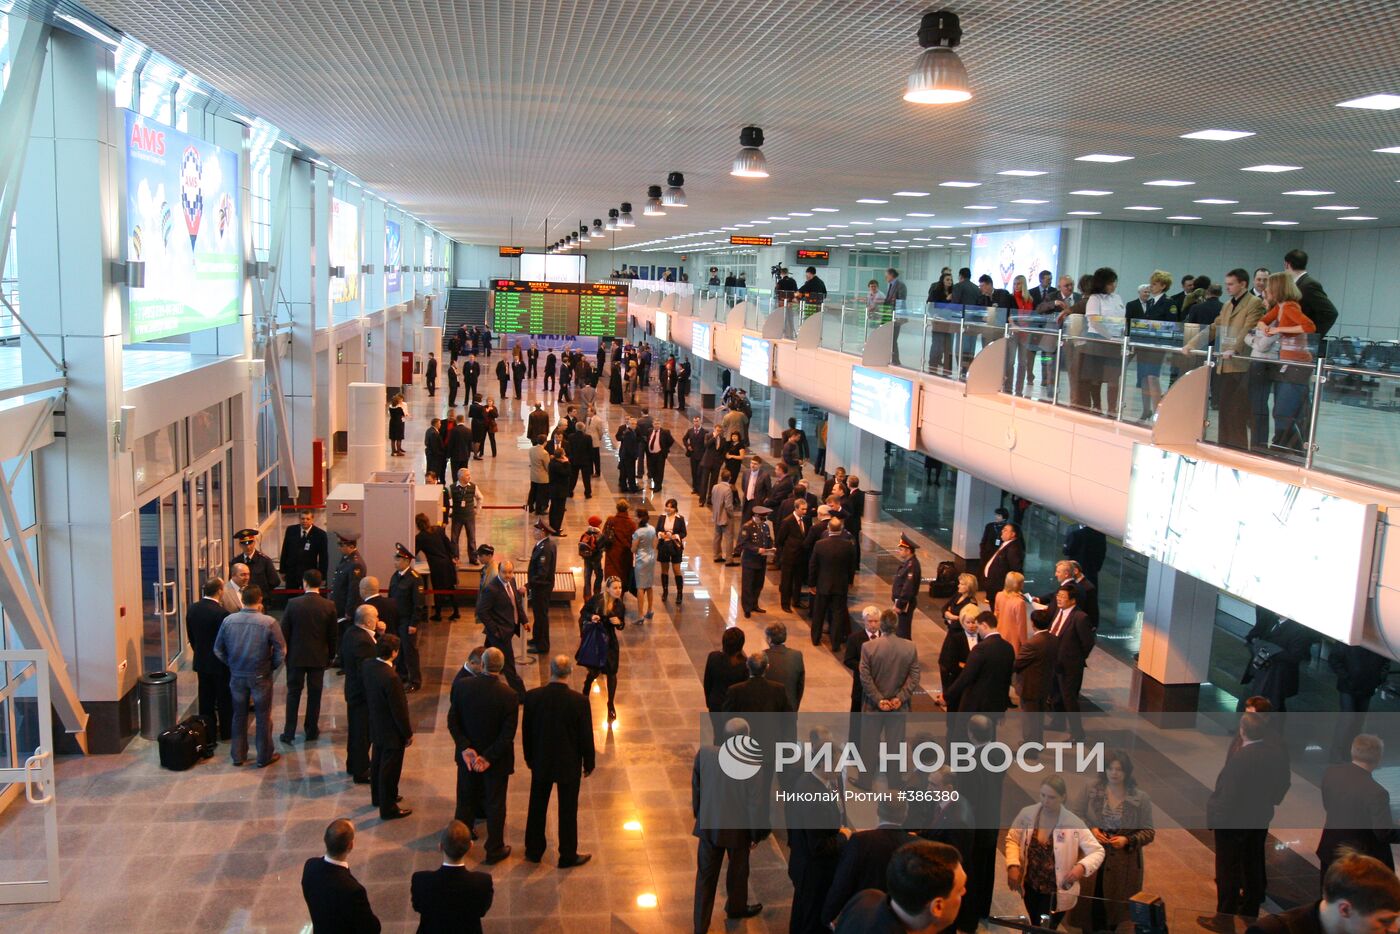 Открытие аэровокзала в Иркутске после реконструкции